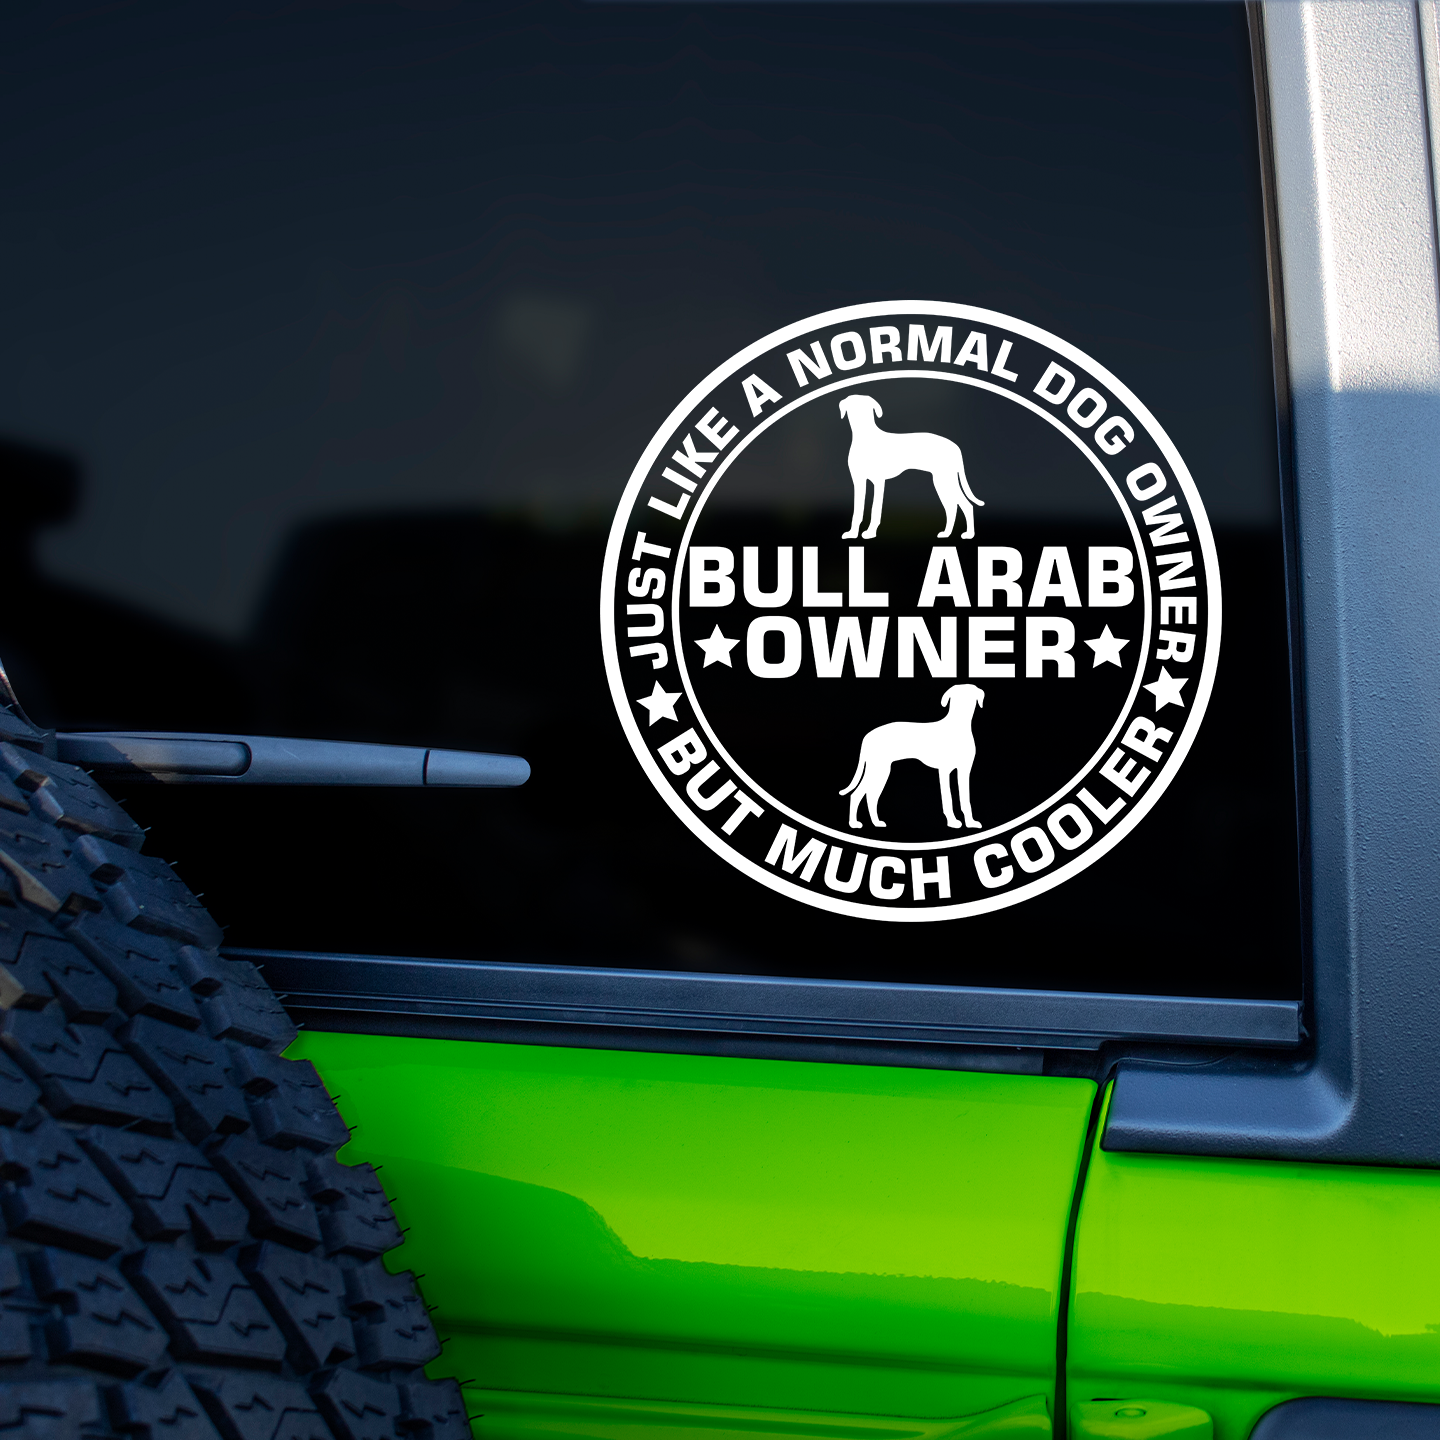 Bull Arab Owner Sticker